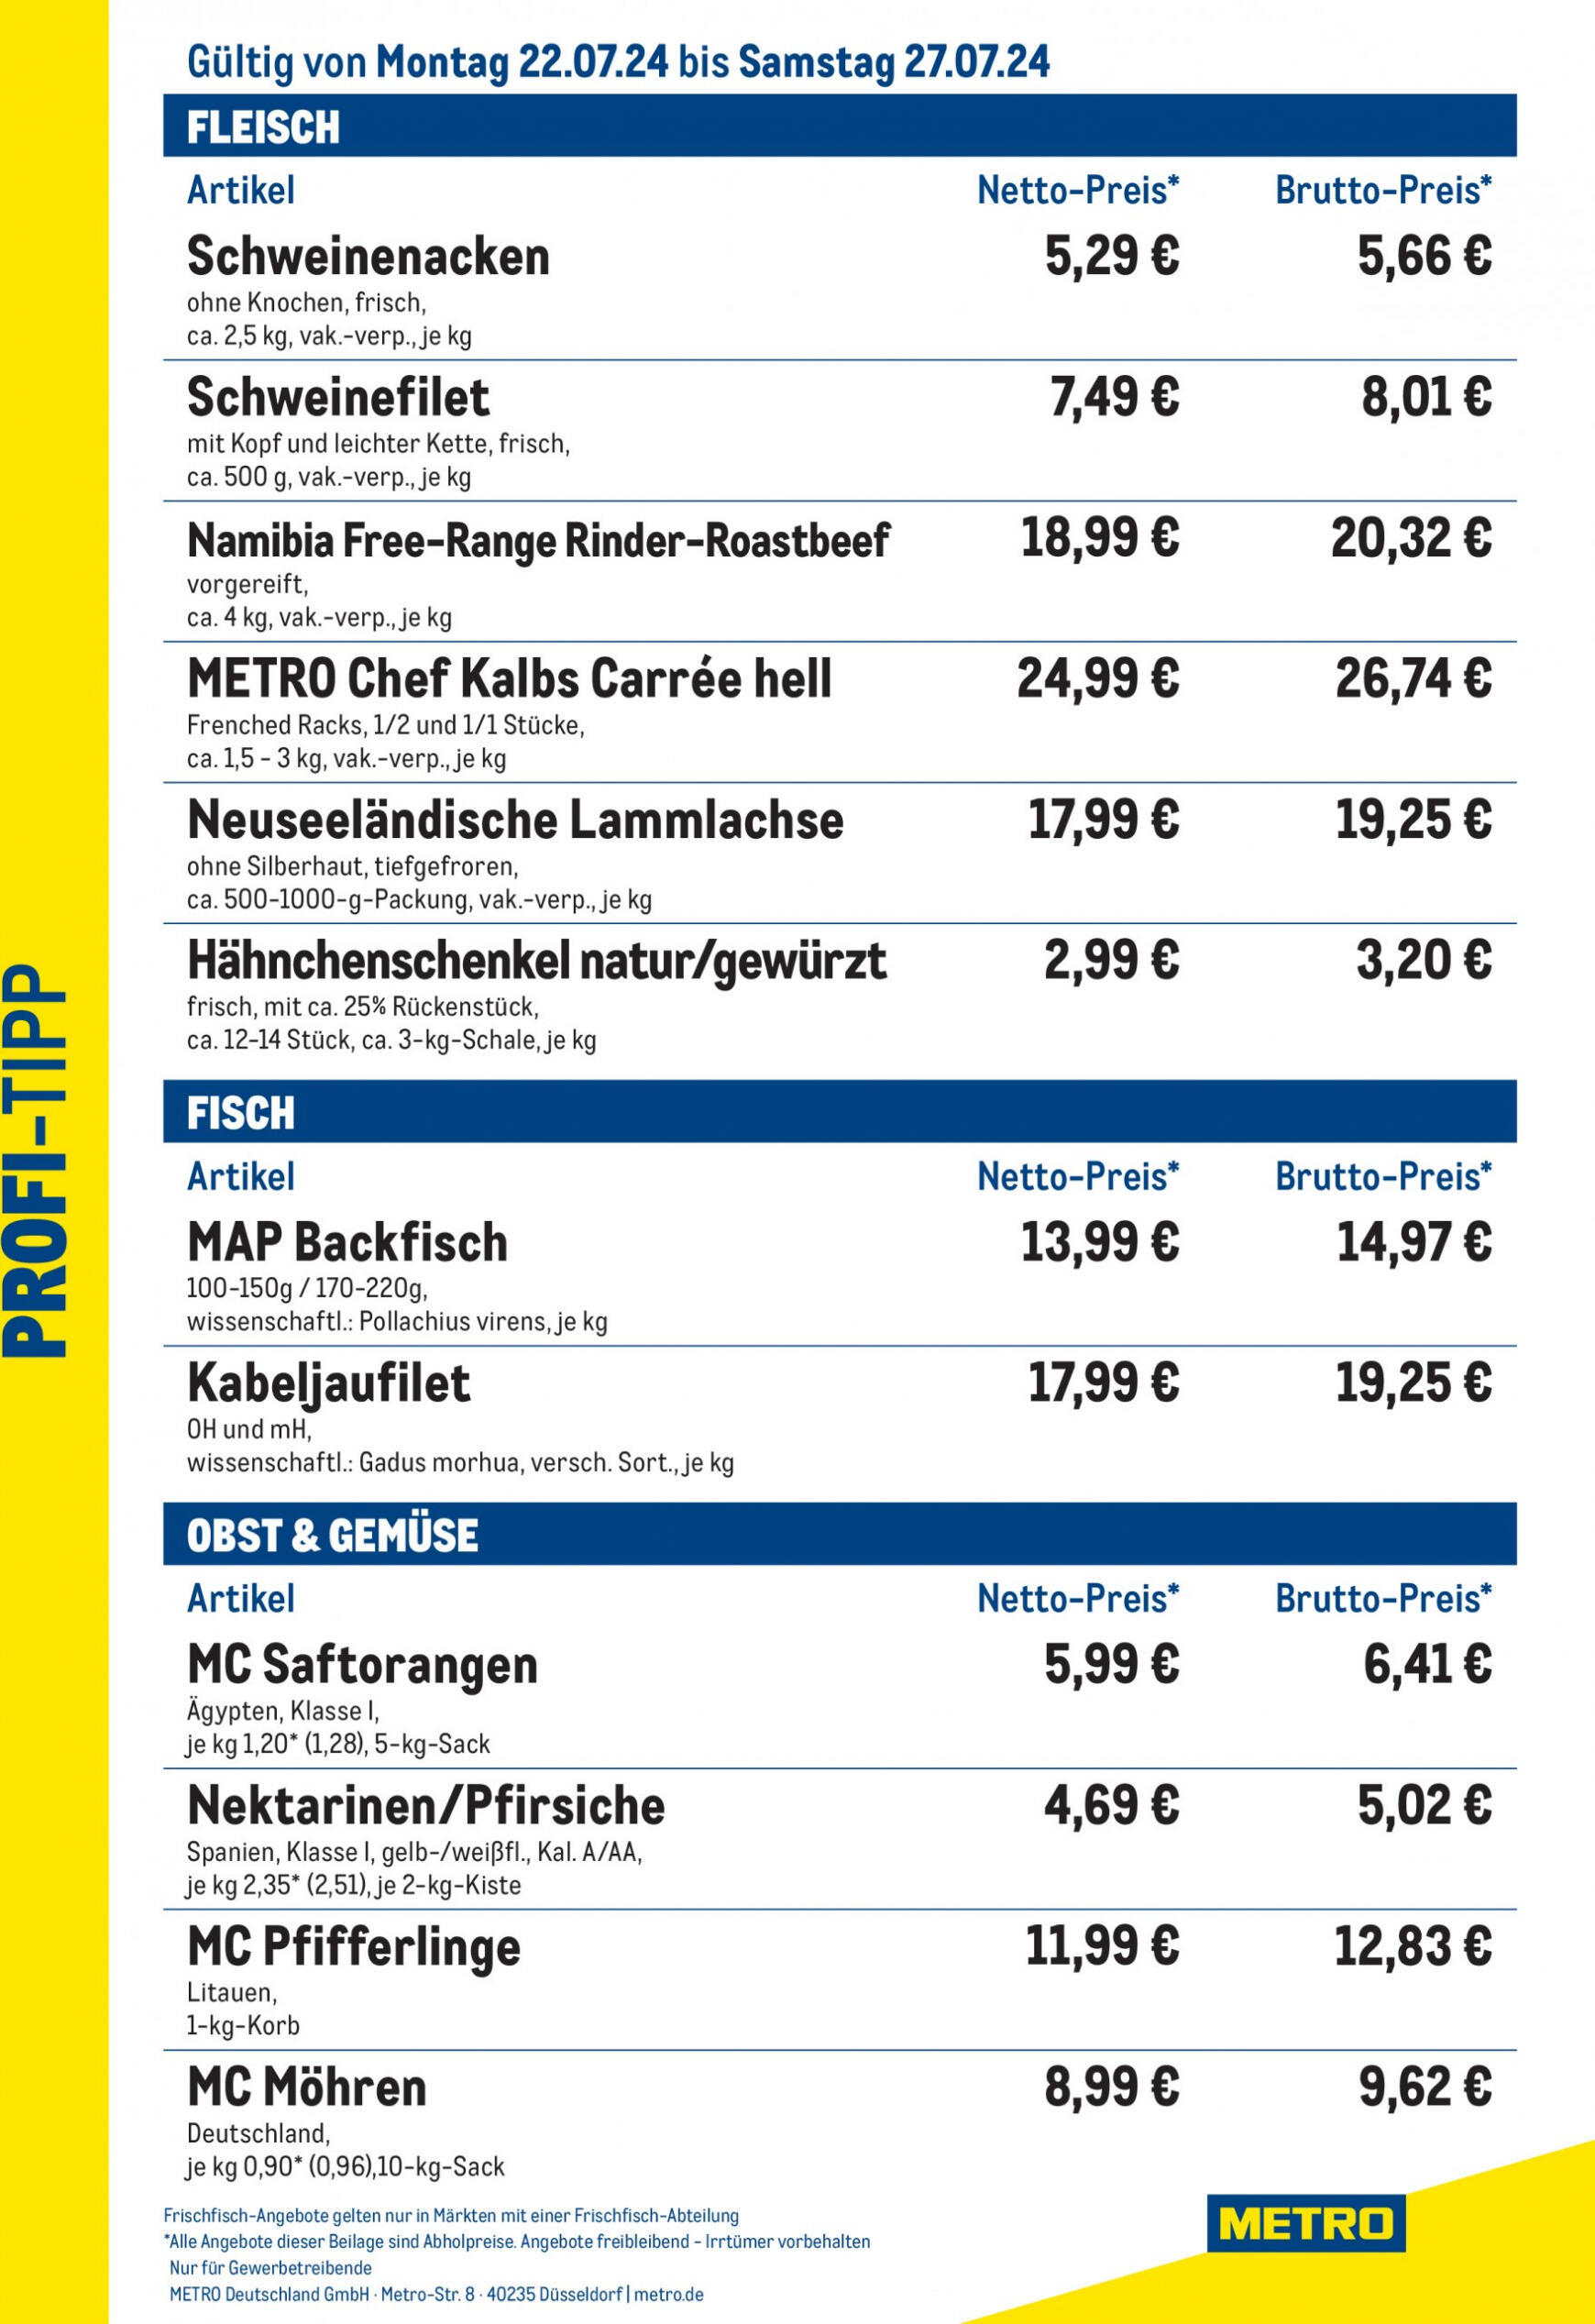 metro - Flyer Metro - Profi-Tipp aktuell 22.07. - 27.07.